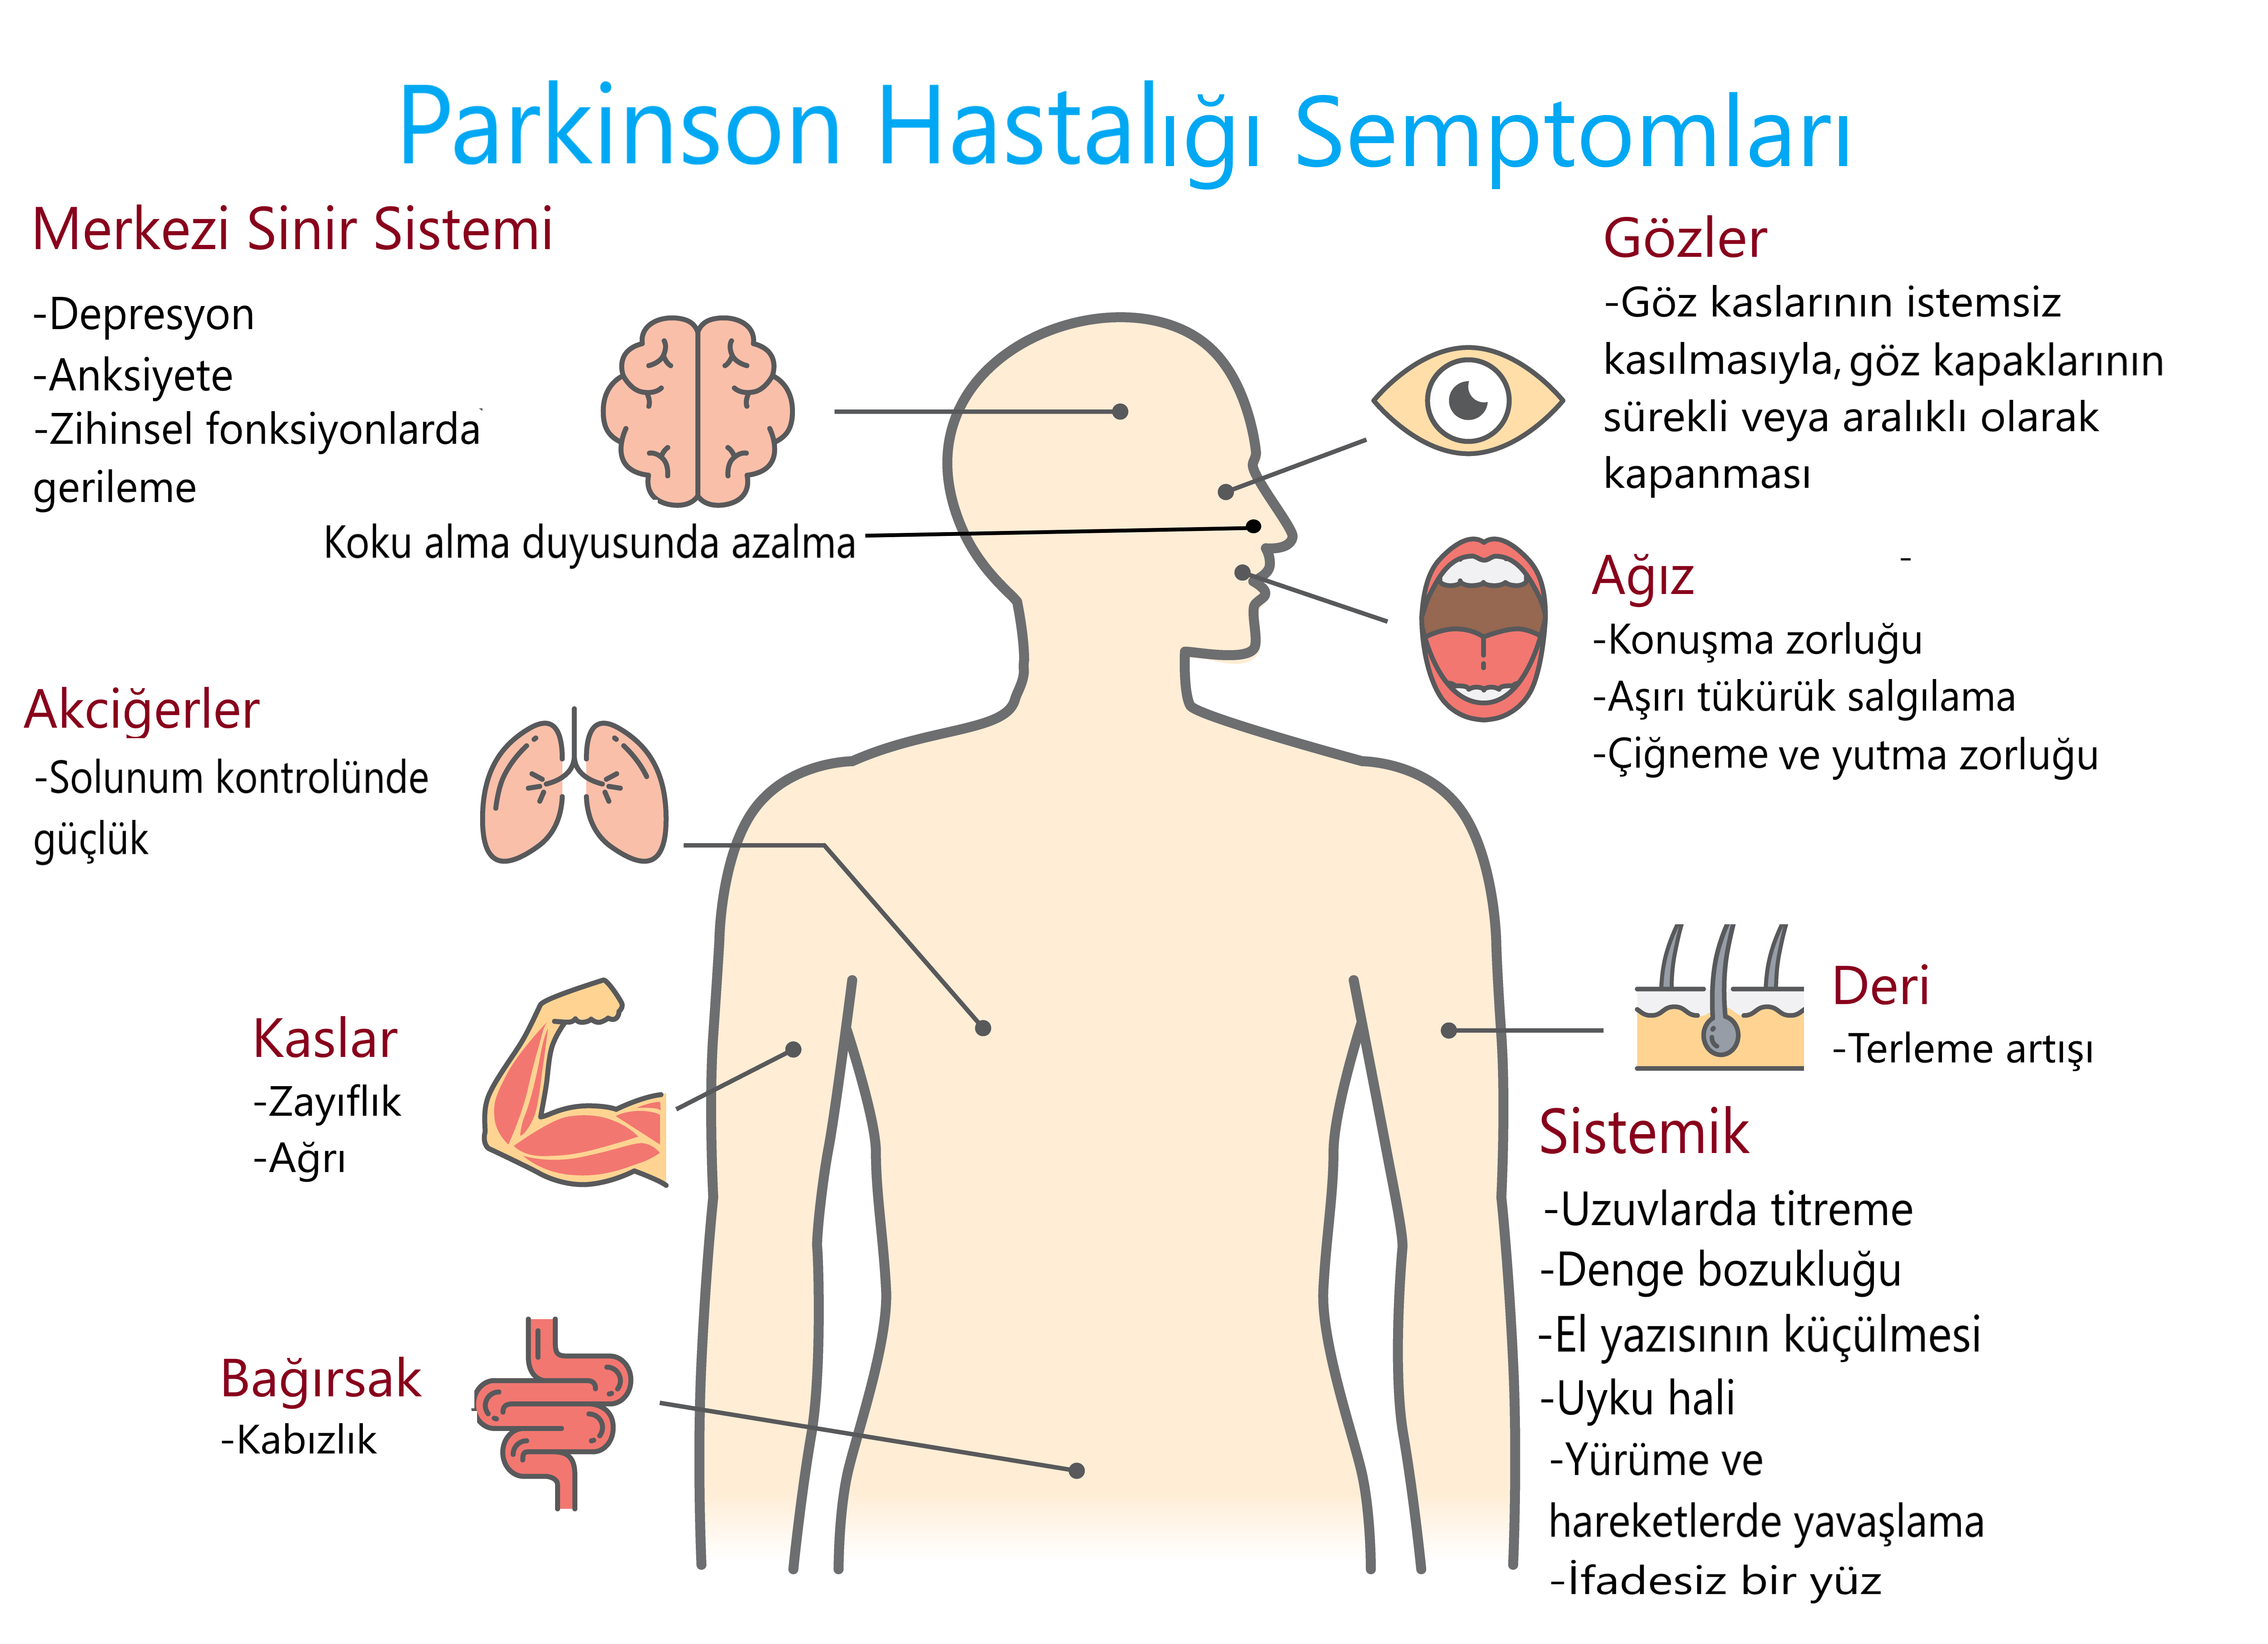 Parkinson Hastalığında; Erken Tanının ve Tedavide Egzersizin Önemi | Nobelyum